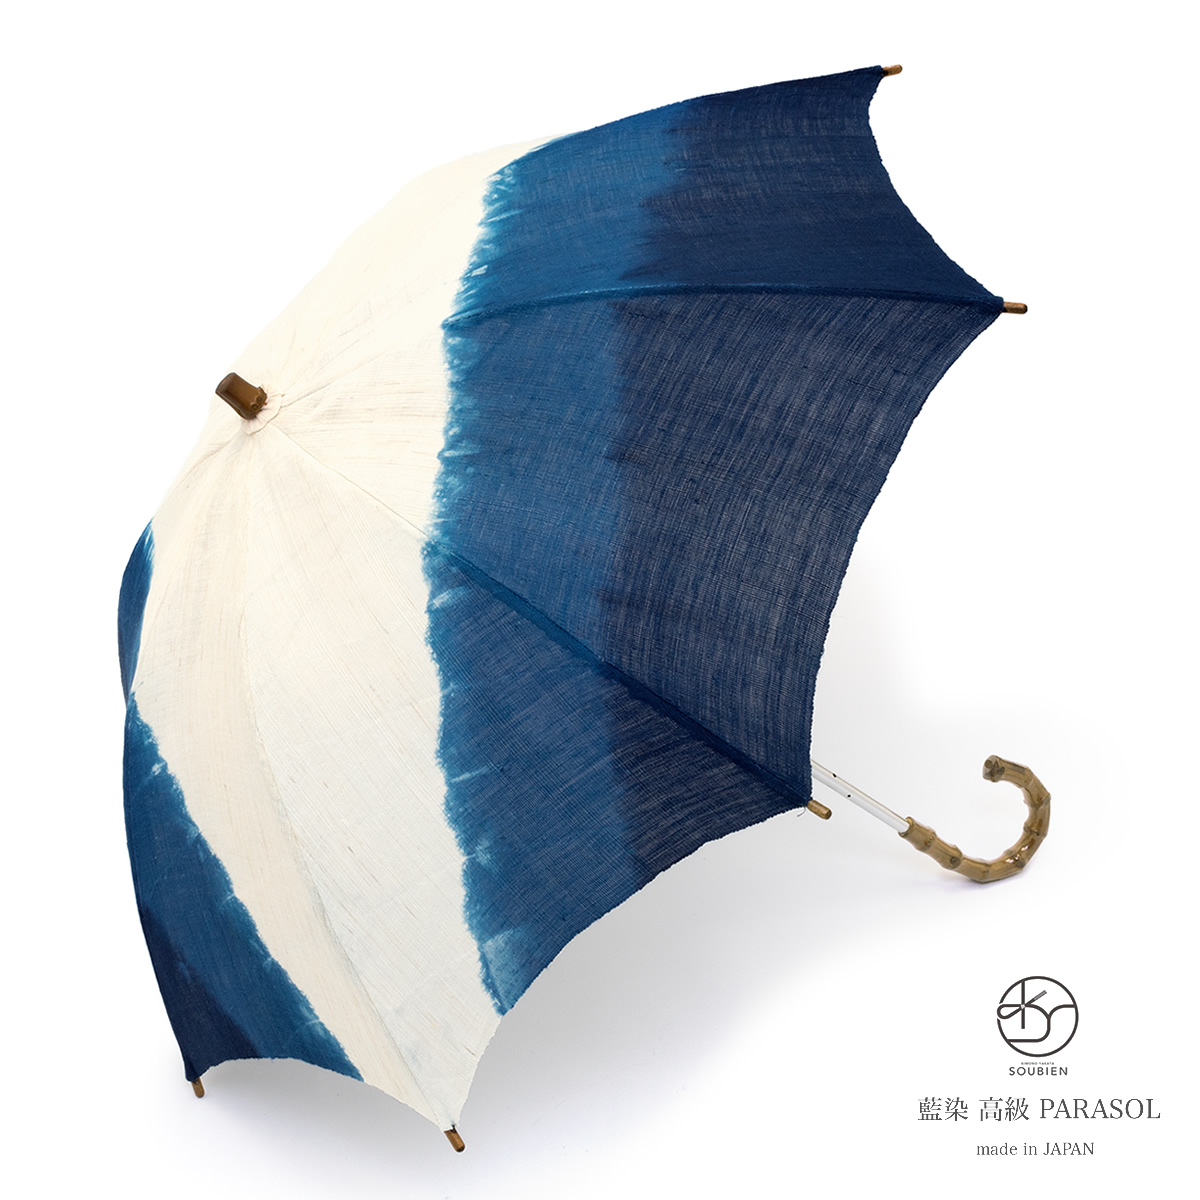 日傘 おしゃれ 長傘 和柄 藍染 麻 ブランド レディース 和装小物 日本 